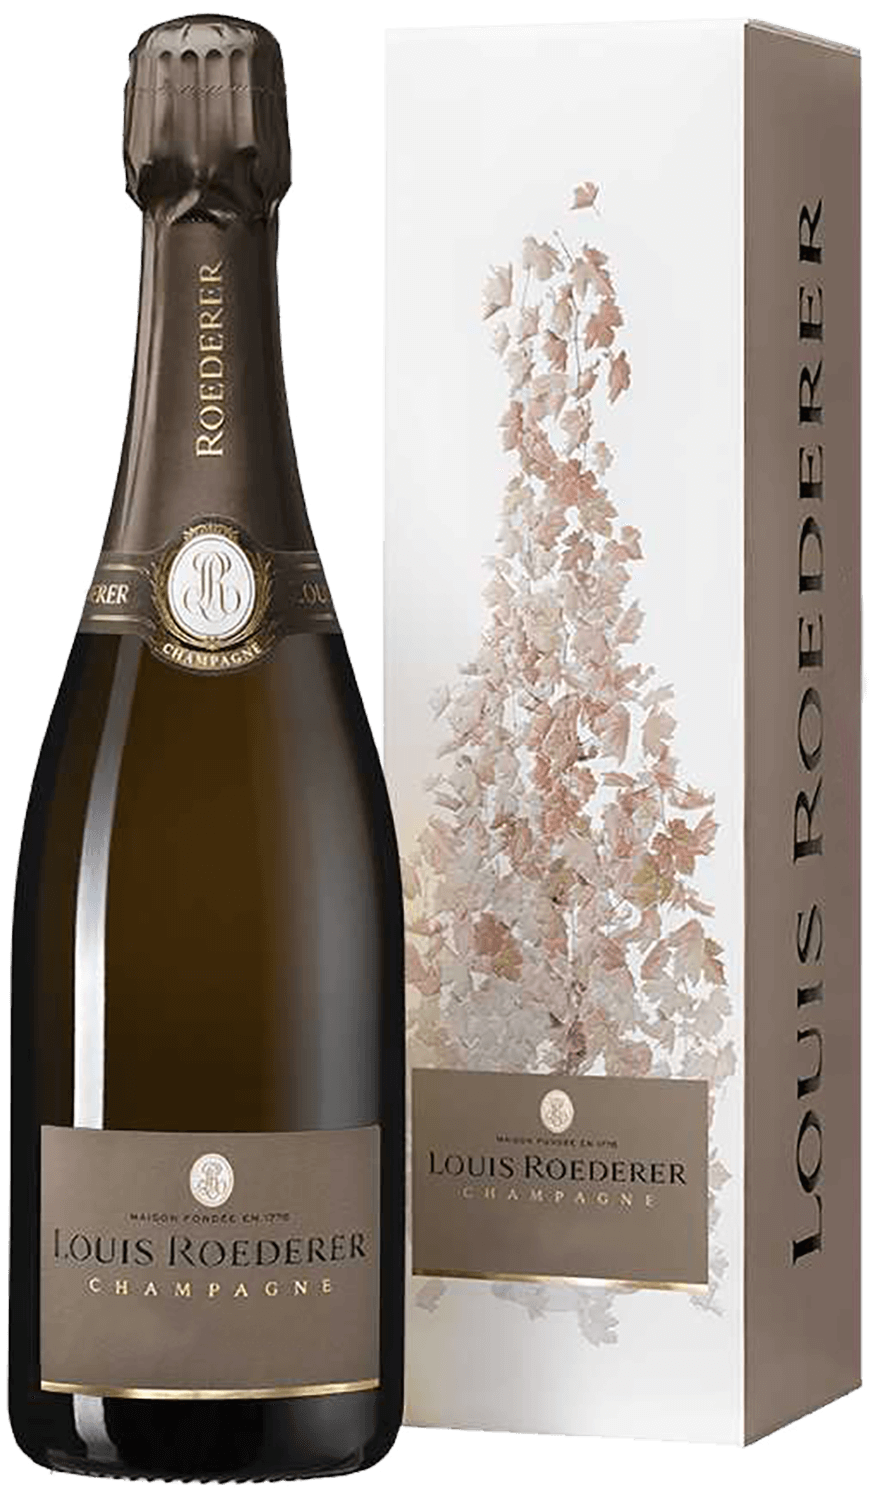 Vintage Brut Champagne AOC Louis Roederer (gift box) brut premiere champagne aoc louis roederer